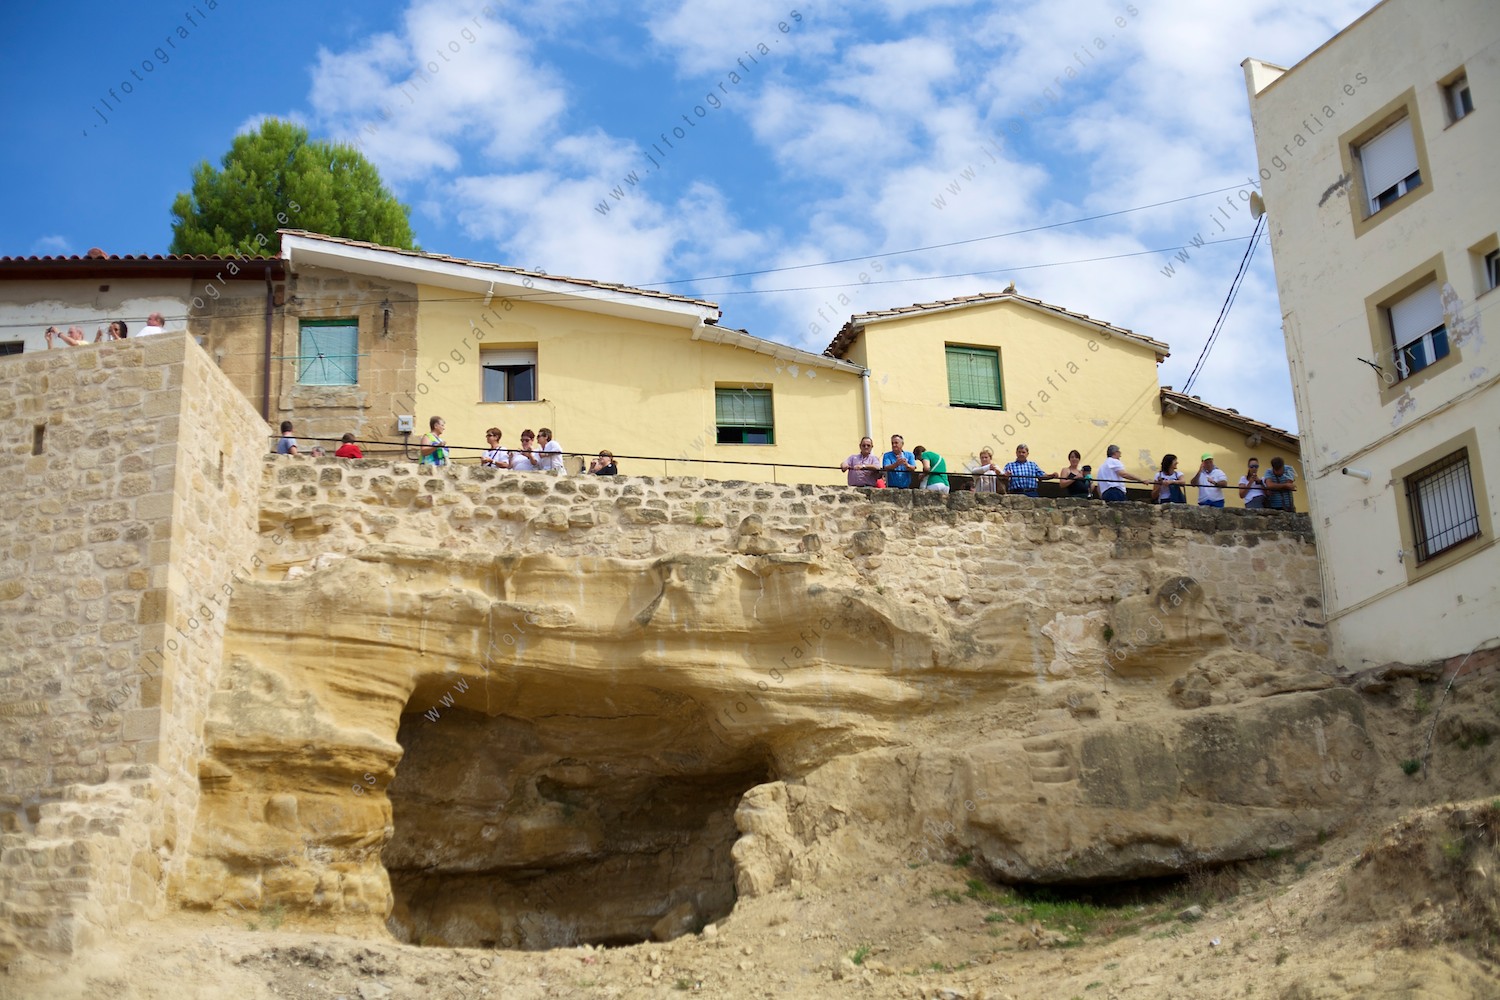 foto postal clásica de un ricón de Labastida een el que se ven las cuevas que hacen de bodegas en las casas rurales